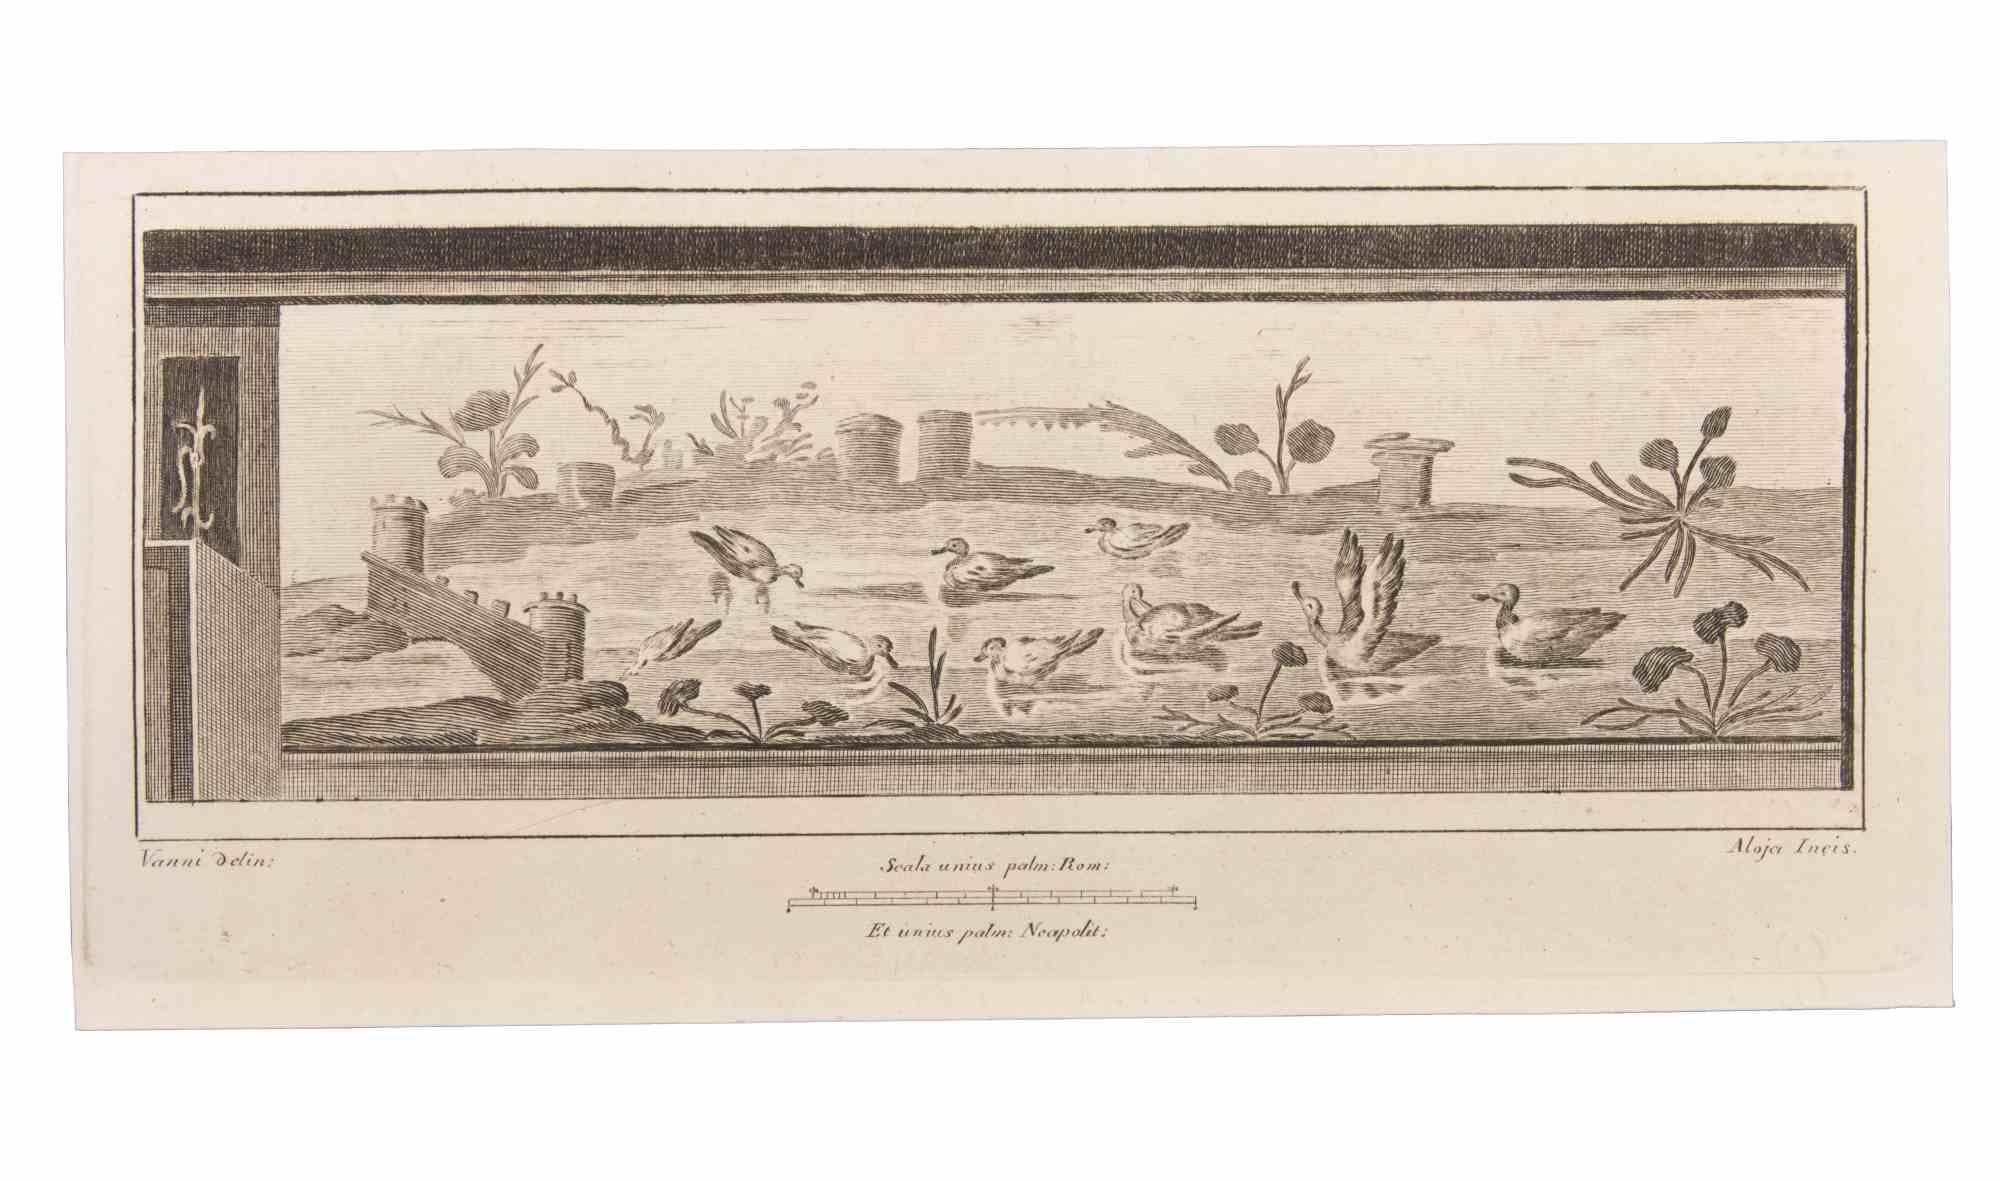 Landscape With Animals est une gravure réalisée par  Luigi Aloja (1783-1837).

La gravure appartient à la suite d'estampes "Antiquités d'Herculanum exposées" (titre original : "Le Antichità di Ercolano Esposte"), un volume de huit gravures des